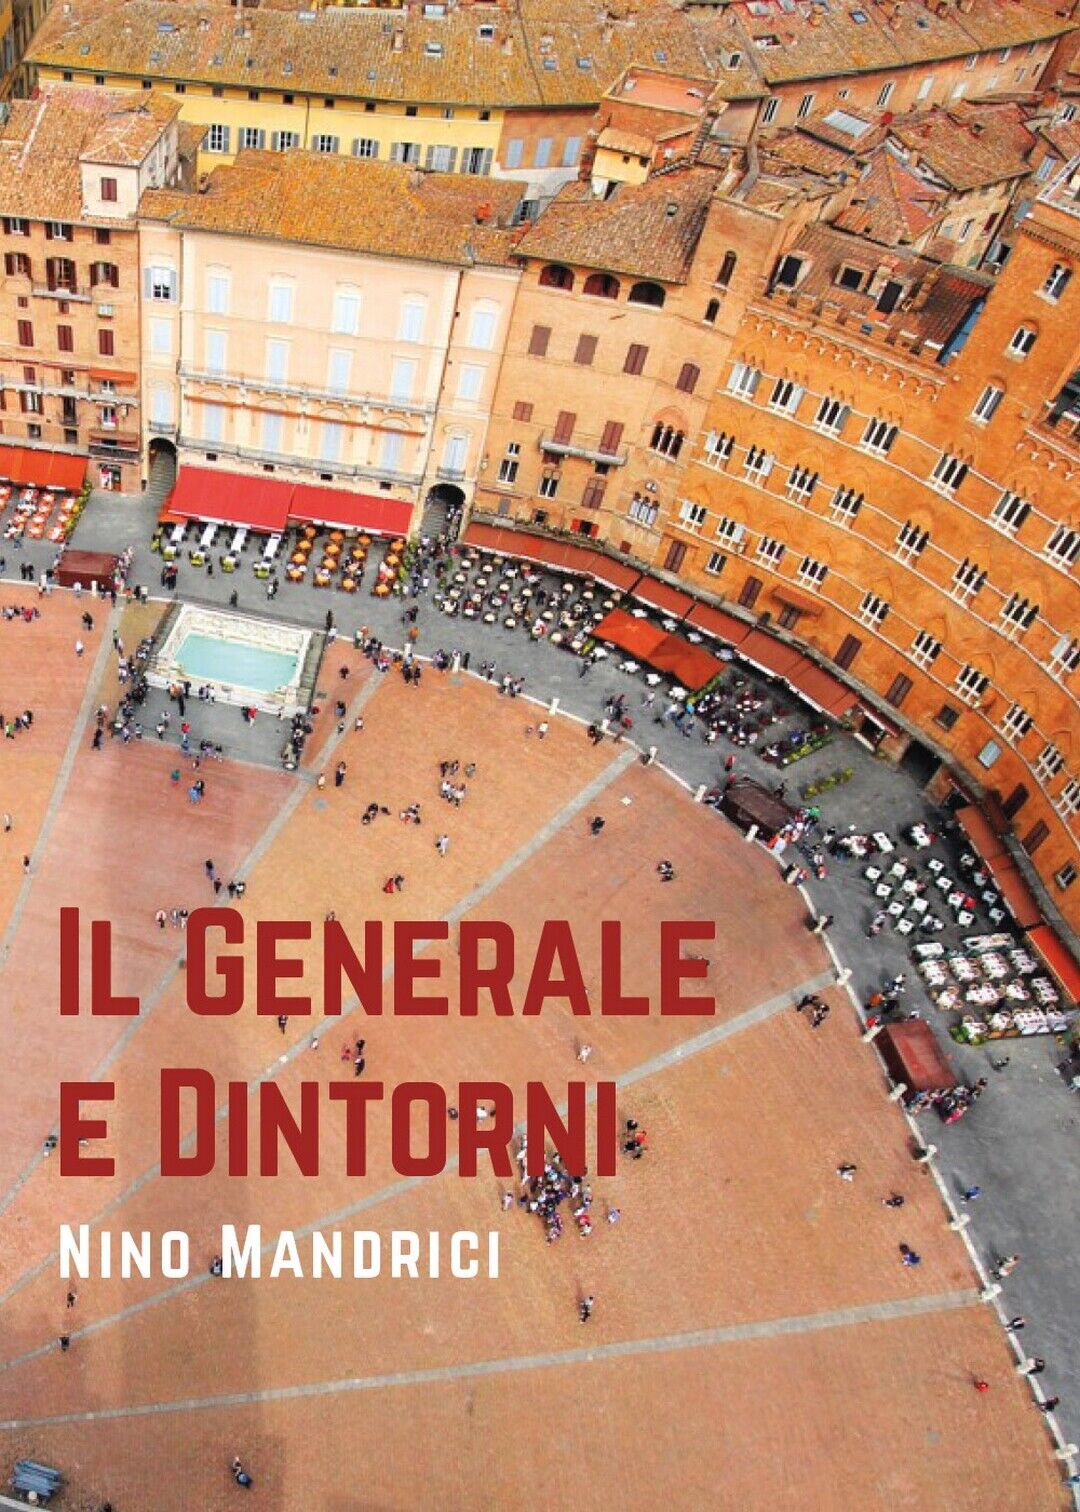 Il generale e dintorni  di Nino Mandrici,  2019,  Youcanprint